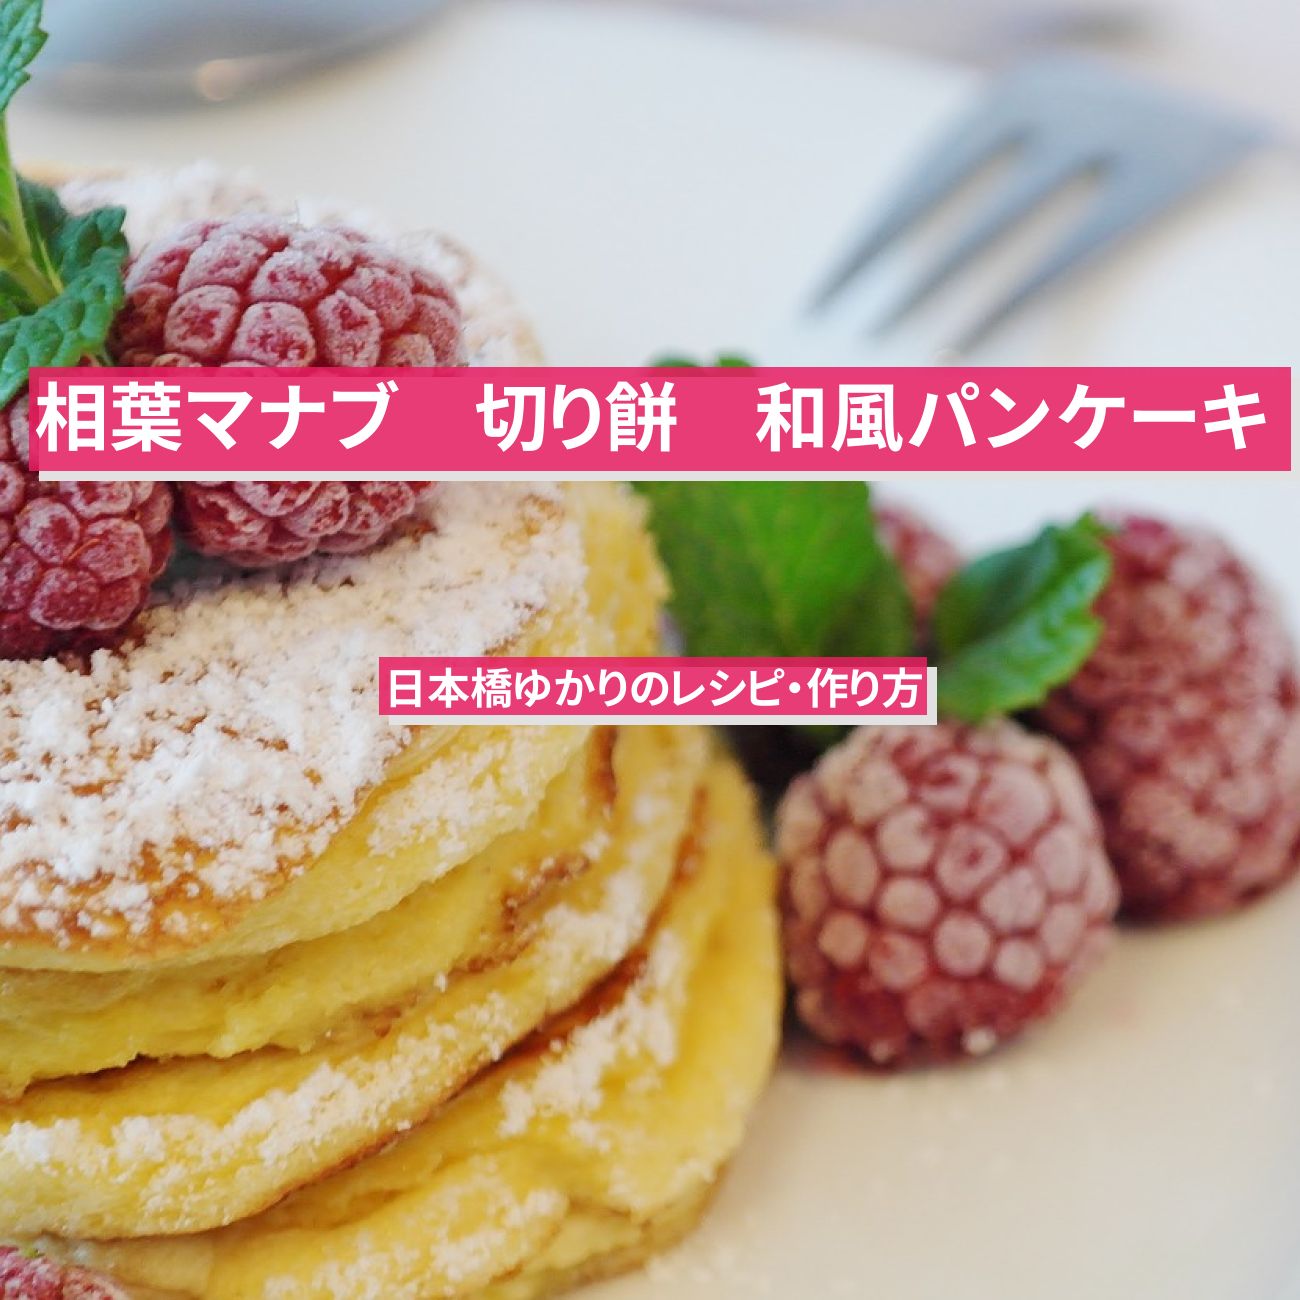 【相葉マナブ】切り餅で『和風パンケーキ』日本橋ゆかり直伝のレシピ・作り方